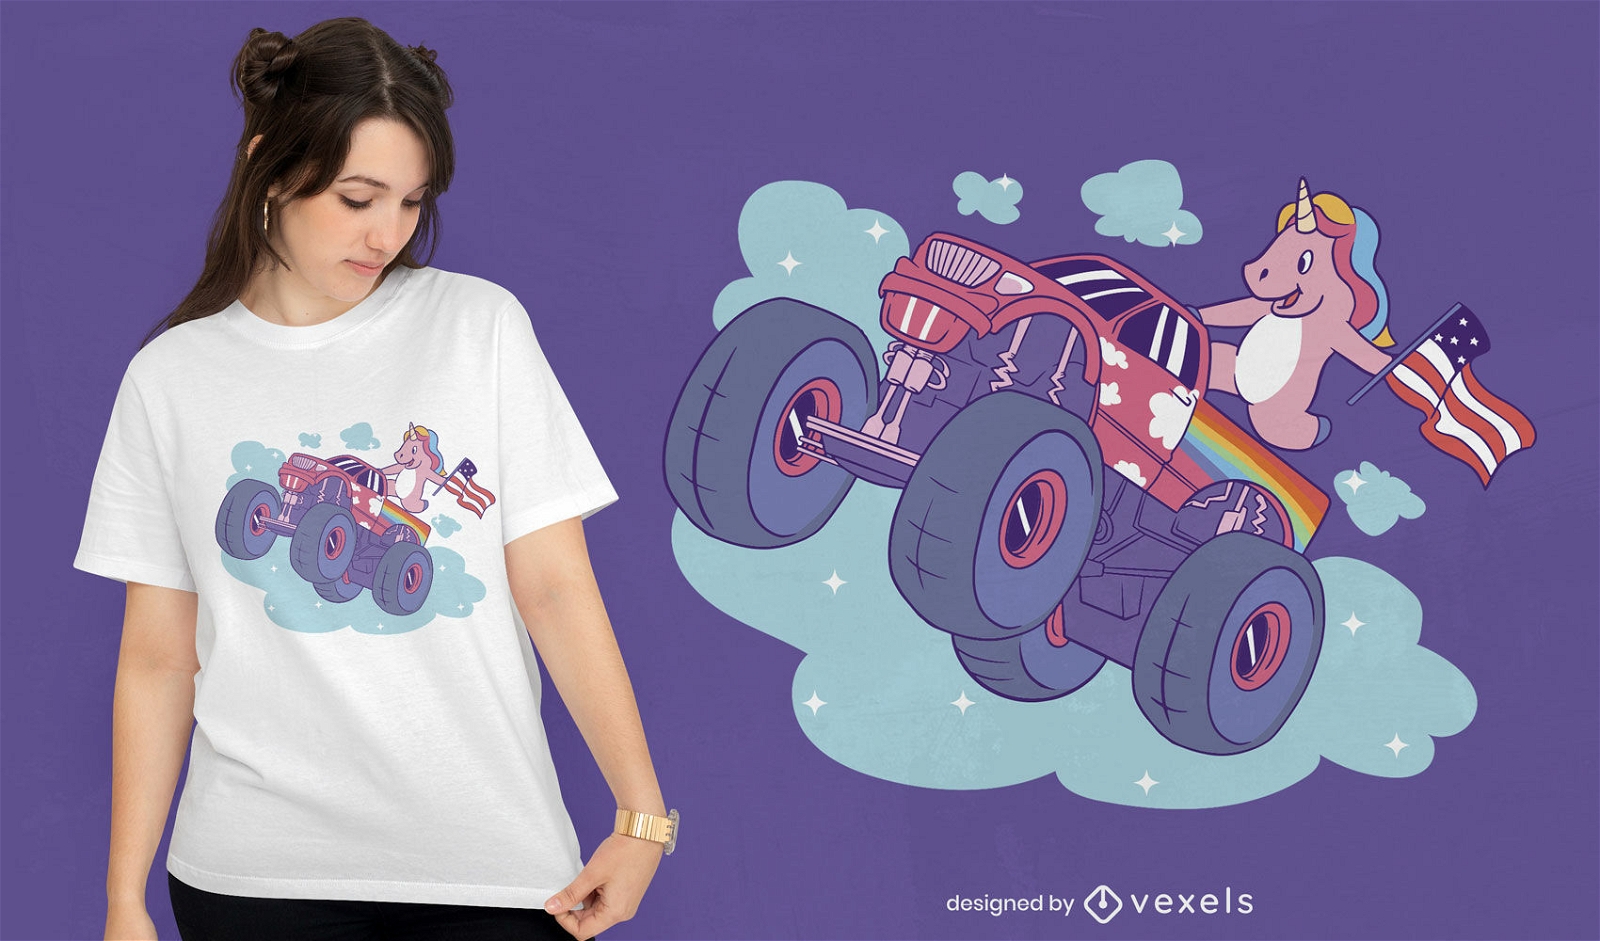 Unicorn on monster truck t-shirt design